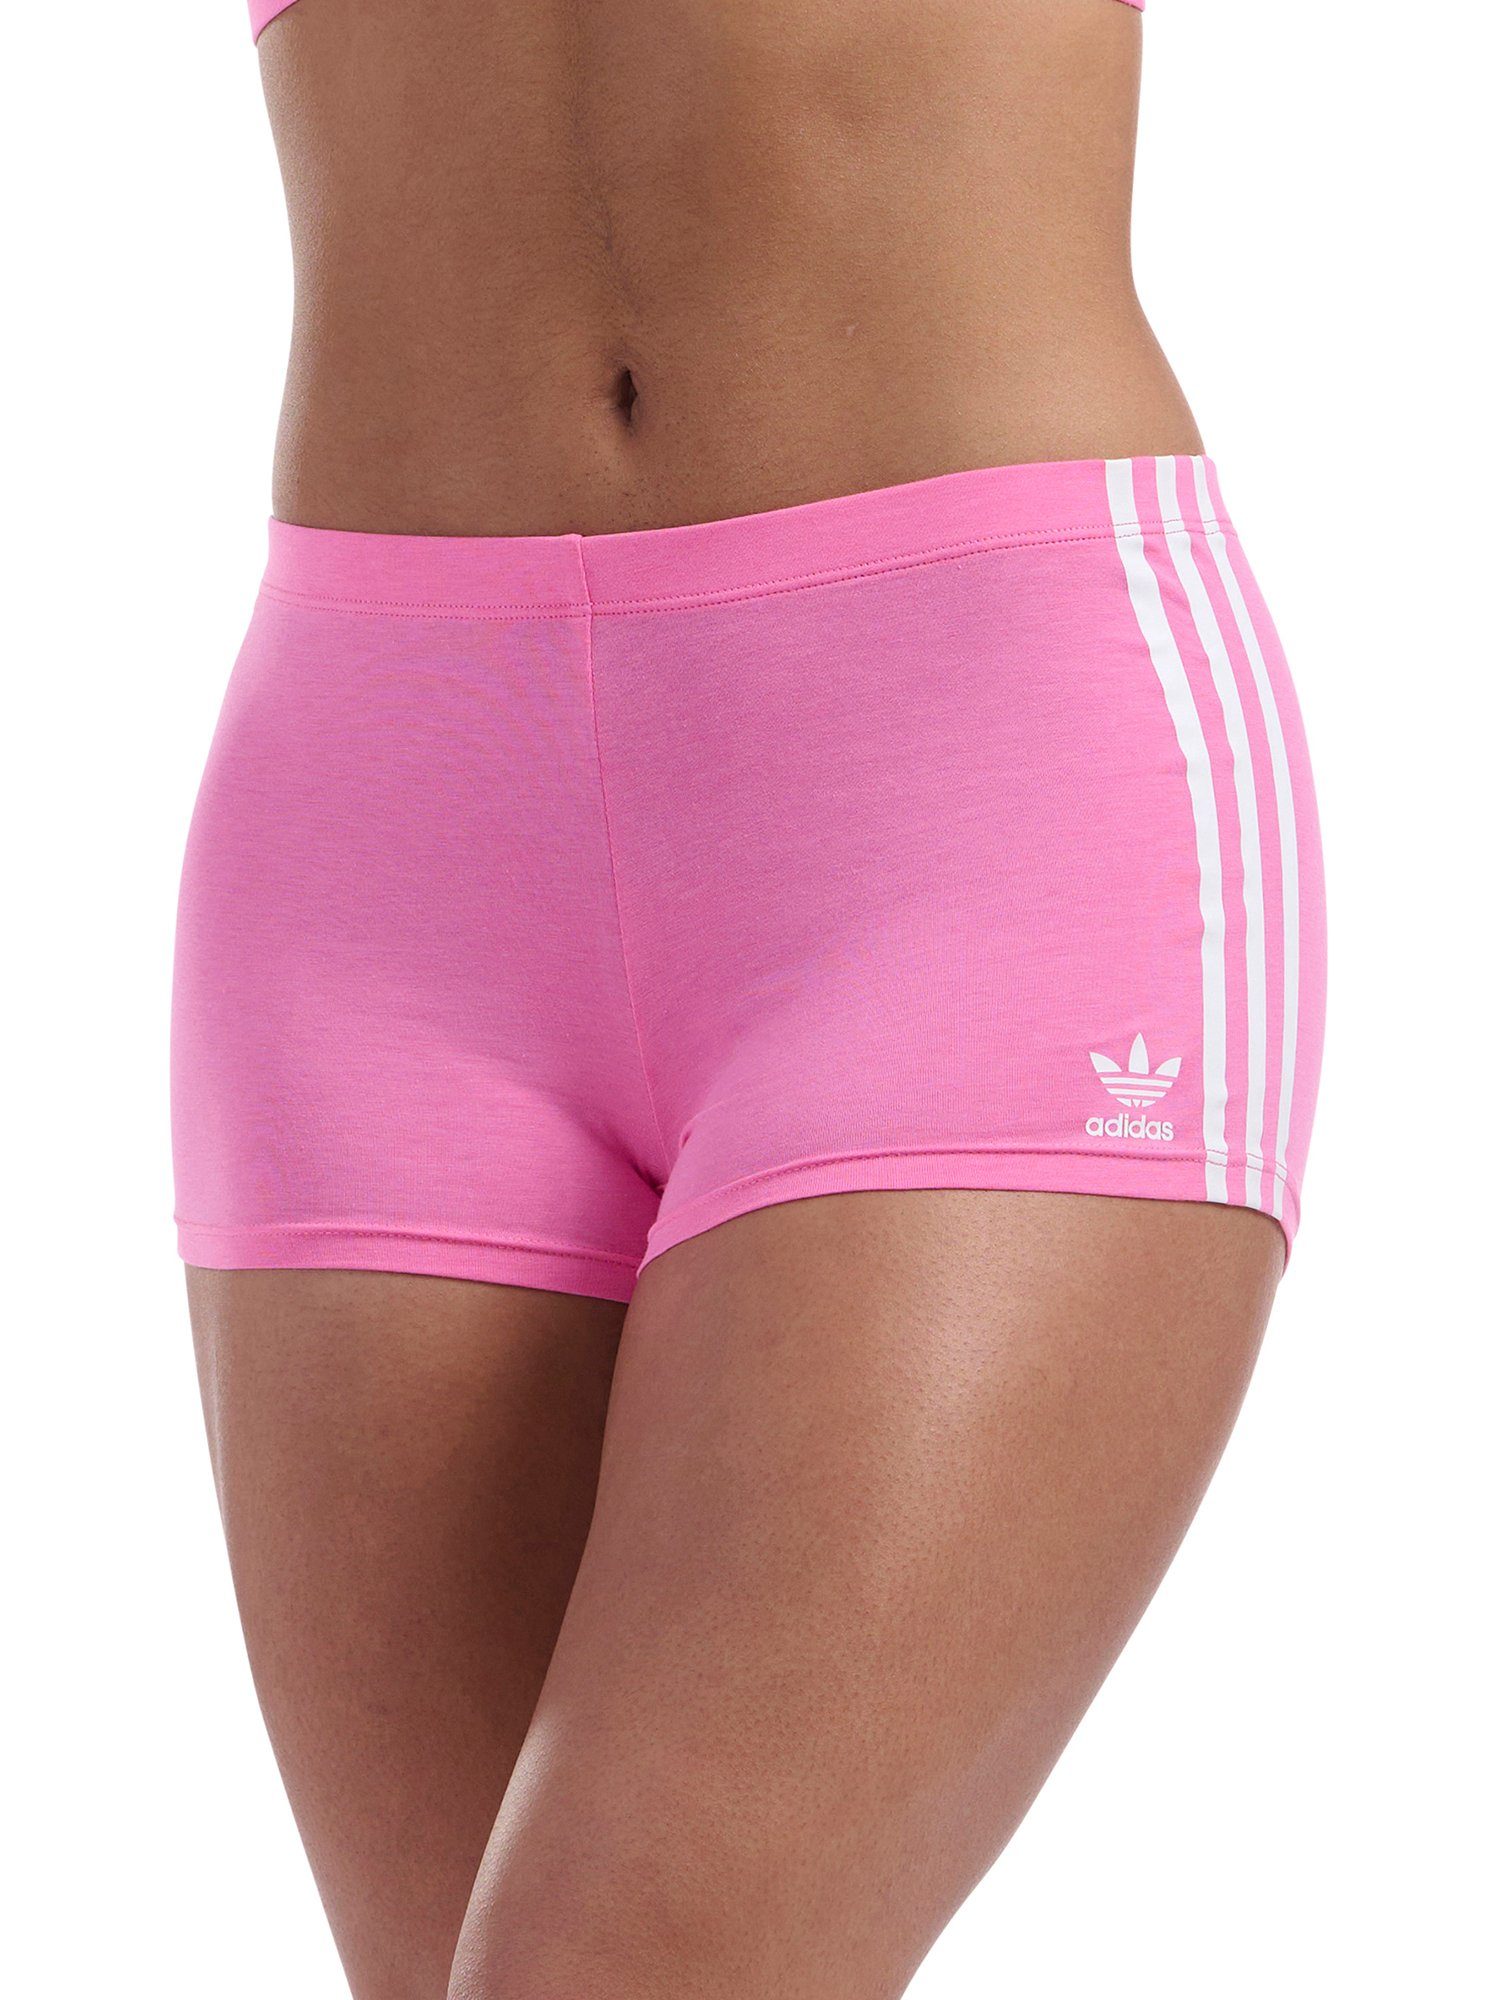 Originals Boxer unterwäsche Biker boxershort unterhose adidas lucid Short pink